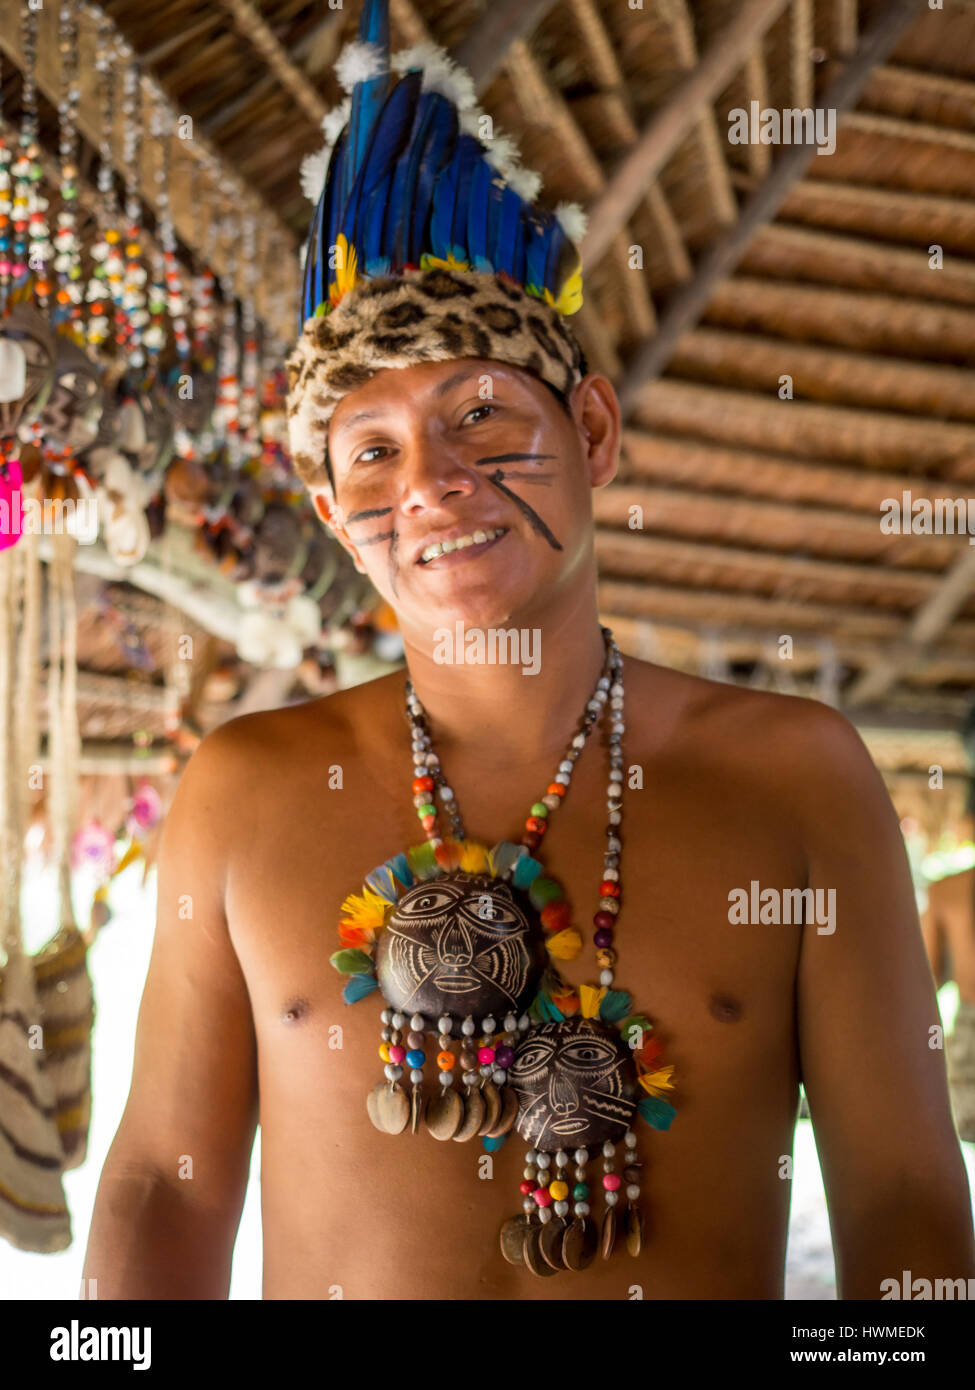 Iquitos, Perù- 15 maggio 2016: Indiano nel suo costume locale Foto Stock